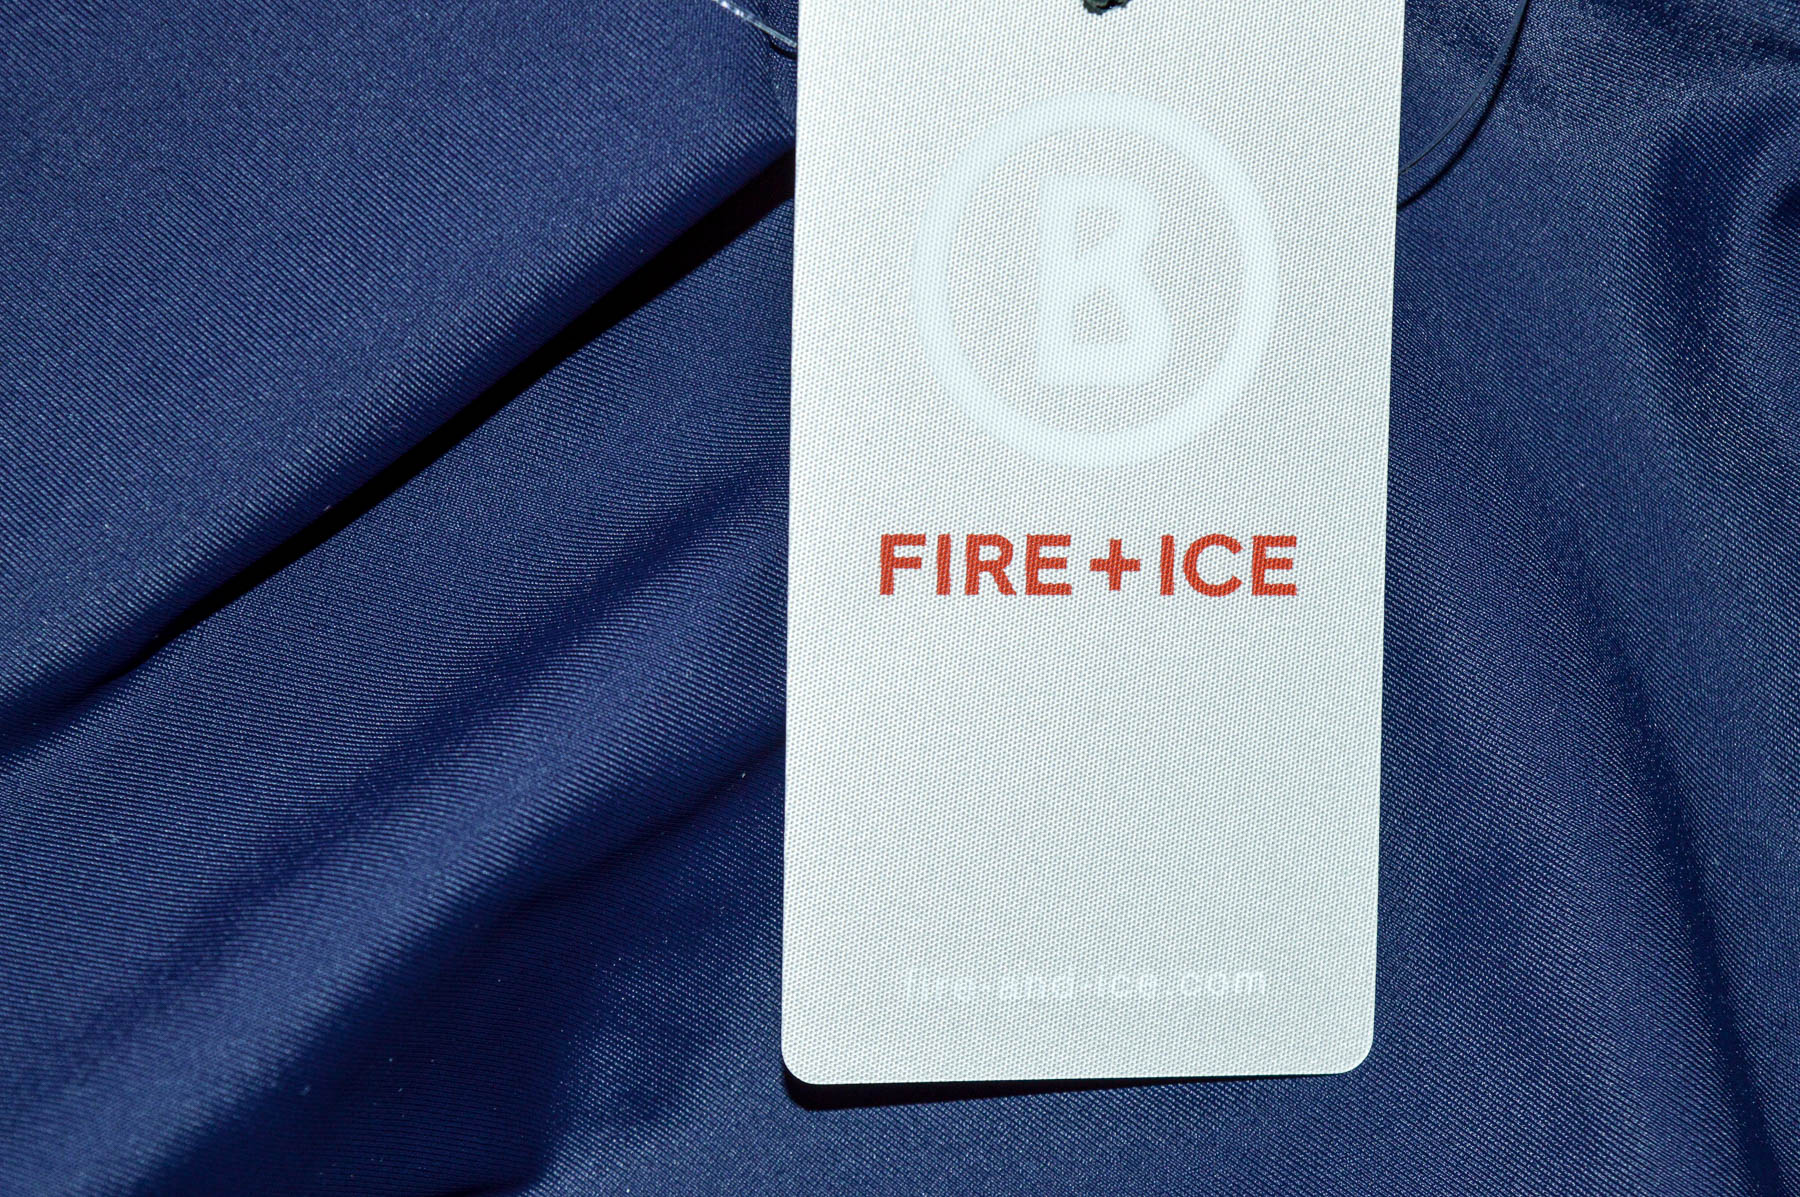 Chiloți de plaj pentru femei - B FIRE + ICE - 2